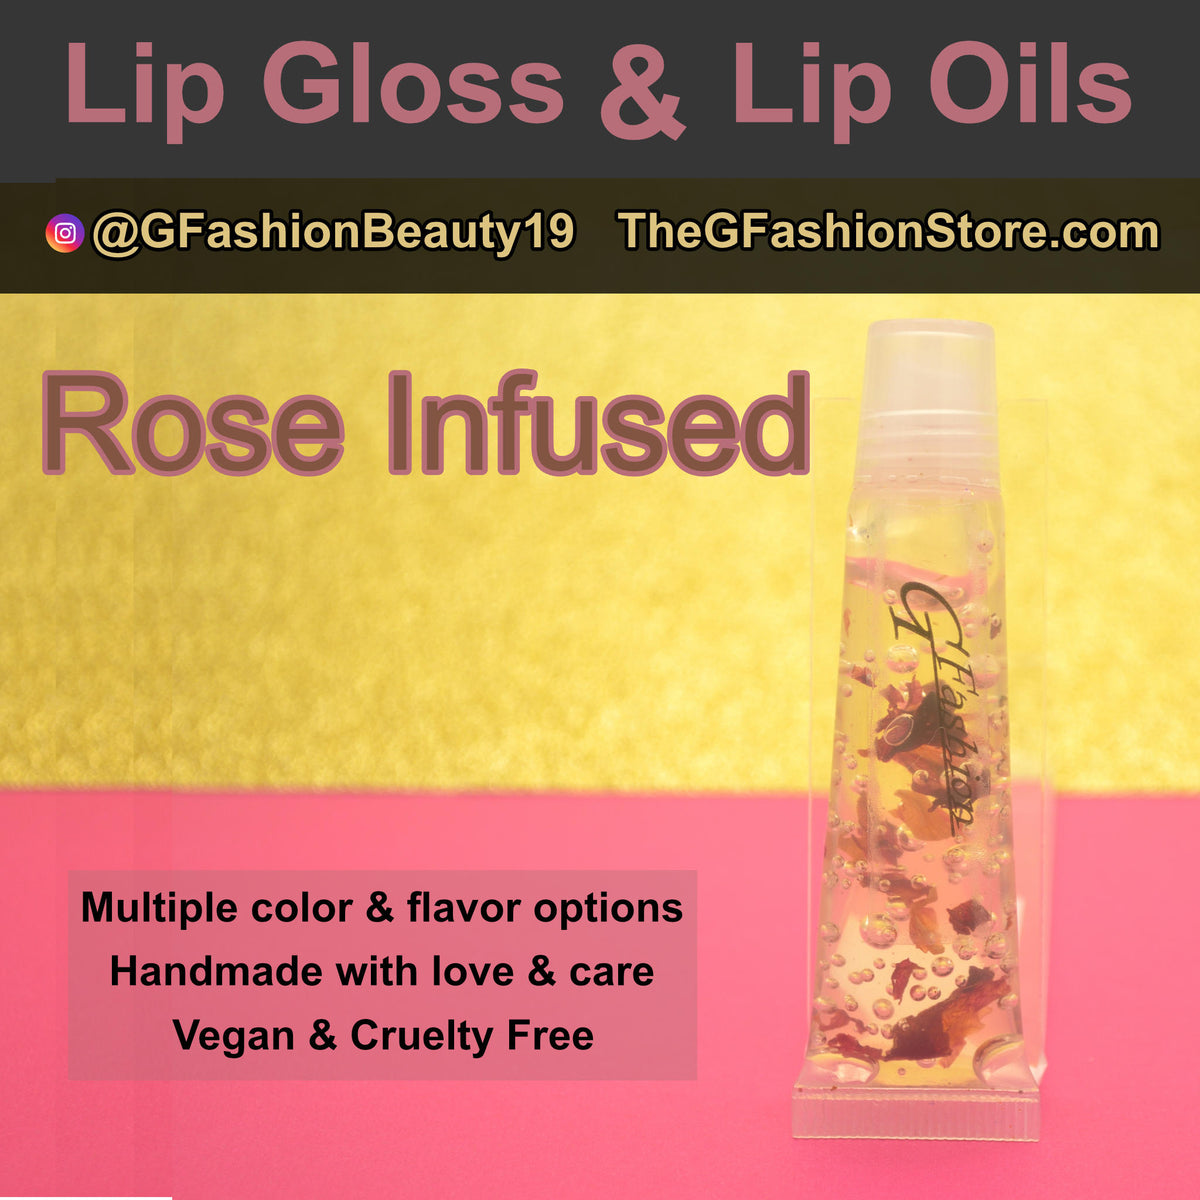 Lip Gloss & Lip Oils